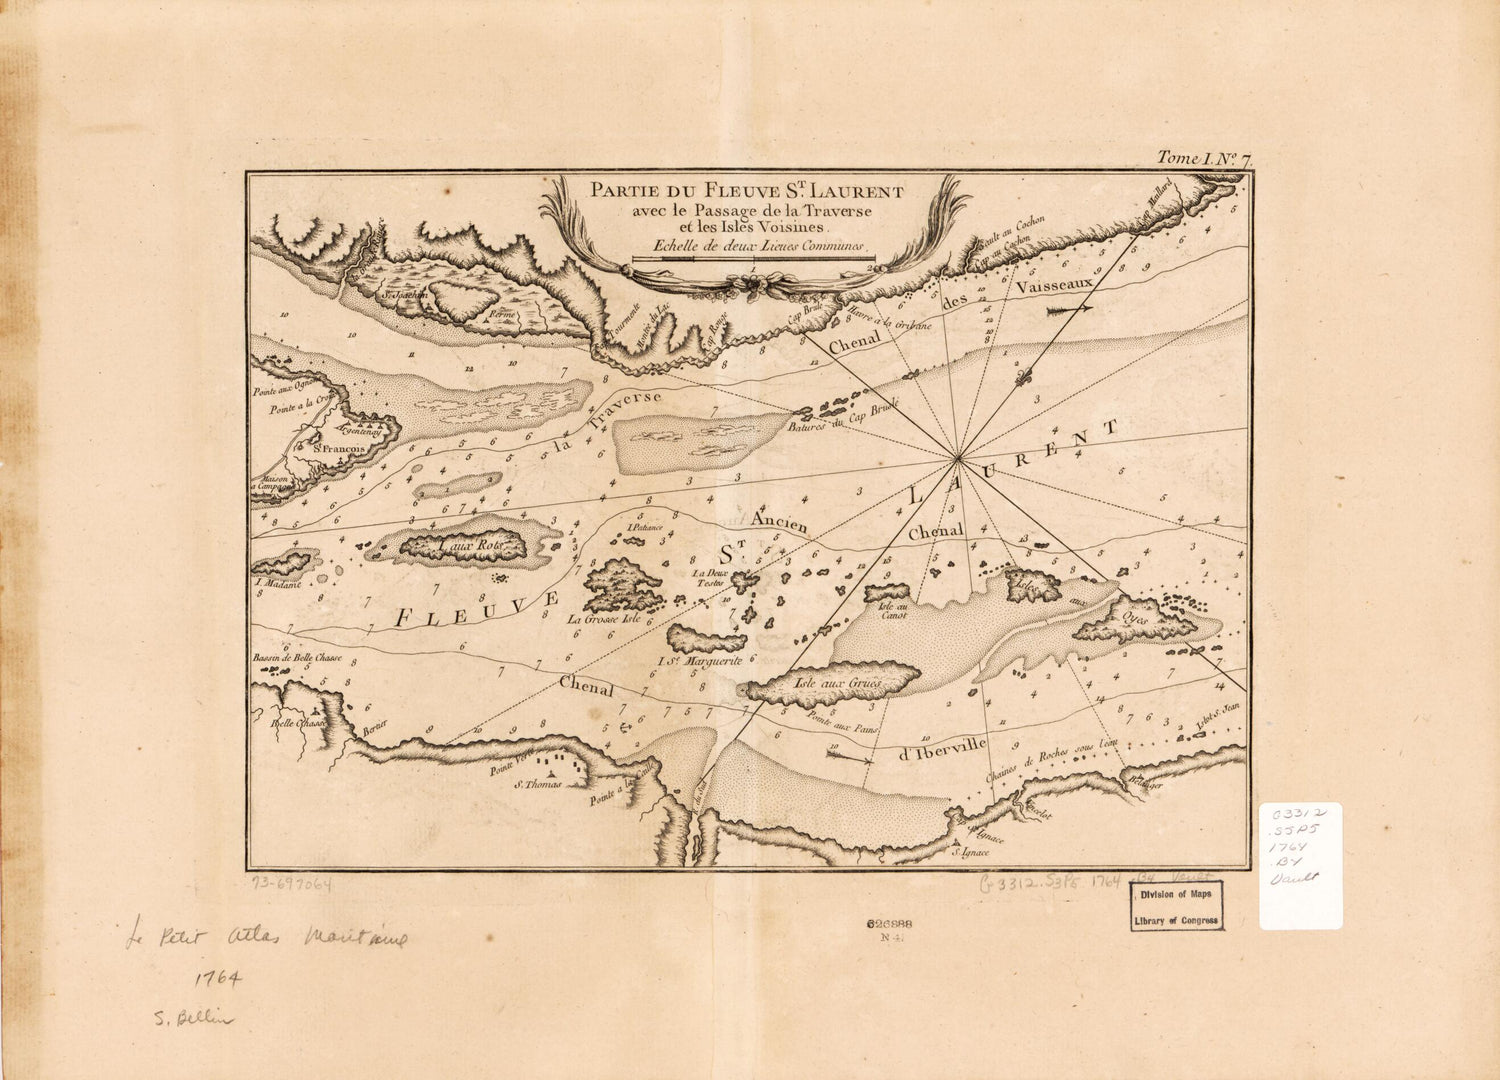 This old map of Partie Du Fleuve St. Laurent Avec Le Passage De La Traverse Et Les Isles Voisines from 1764 was created by Jacques Nicolas] [Bellin in 1764